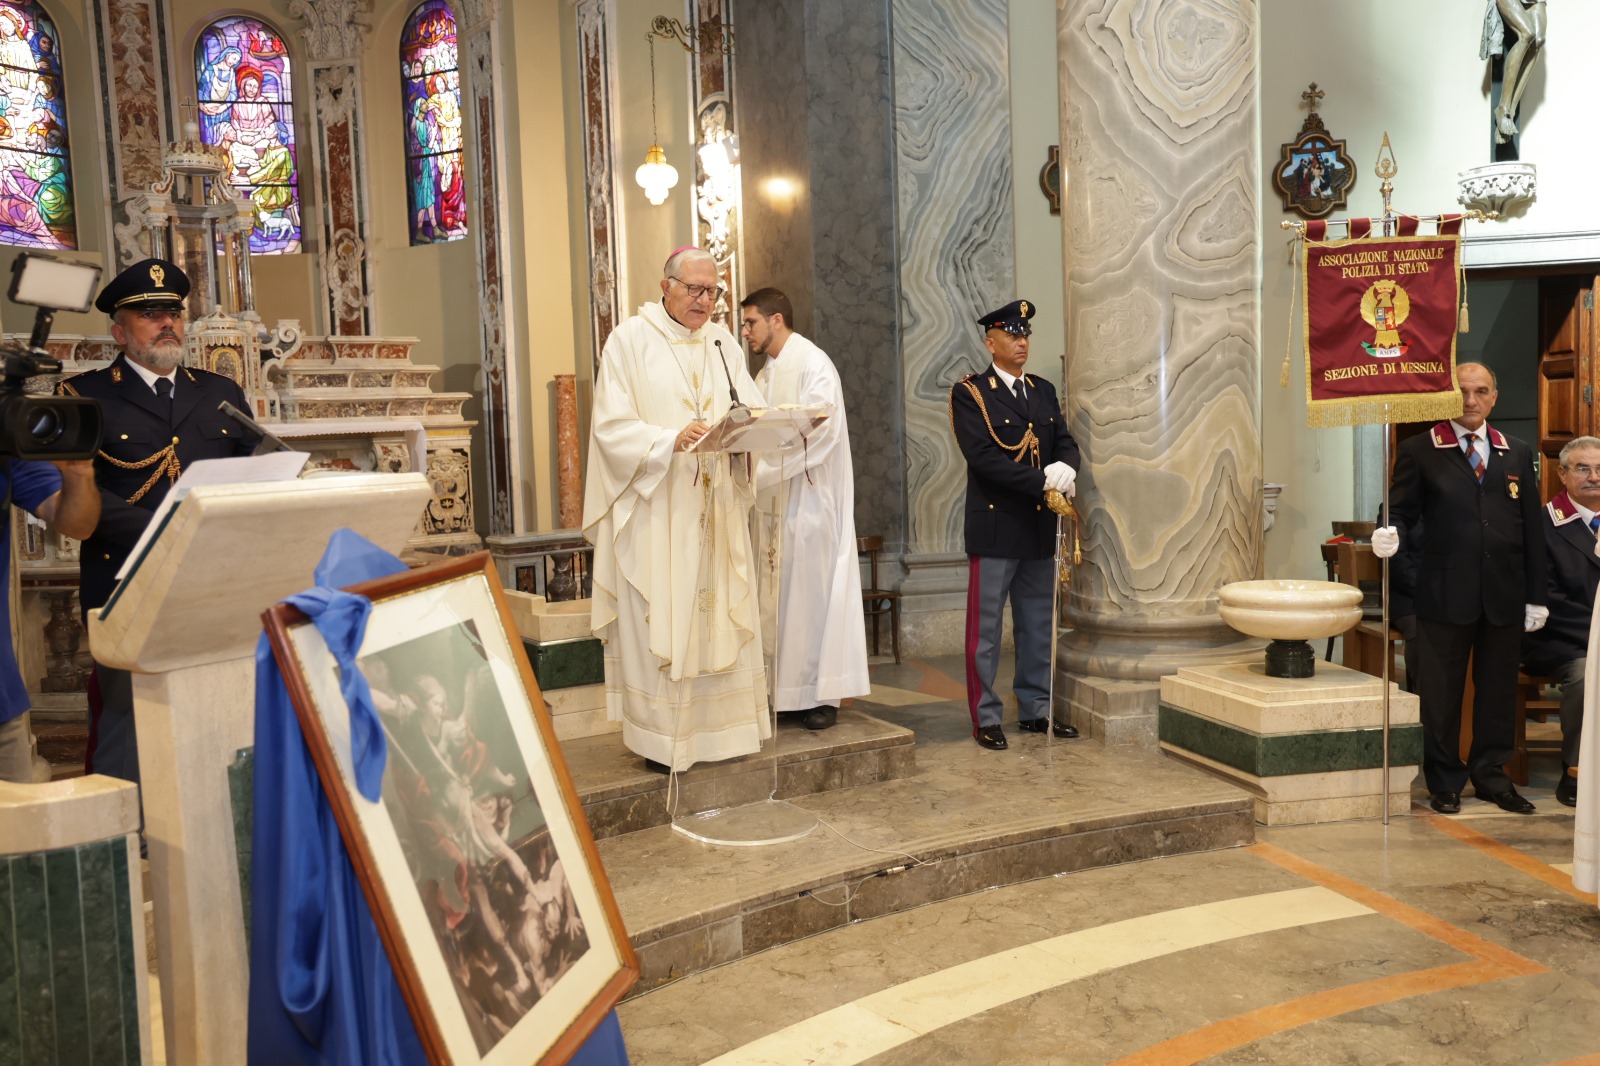 Messina, celebrato San Michele Arcangelo: patrono della polizia di Stato.  Messa solenne nella chiesa di S. Antonio Abate - Gazzetta del Sud